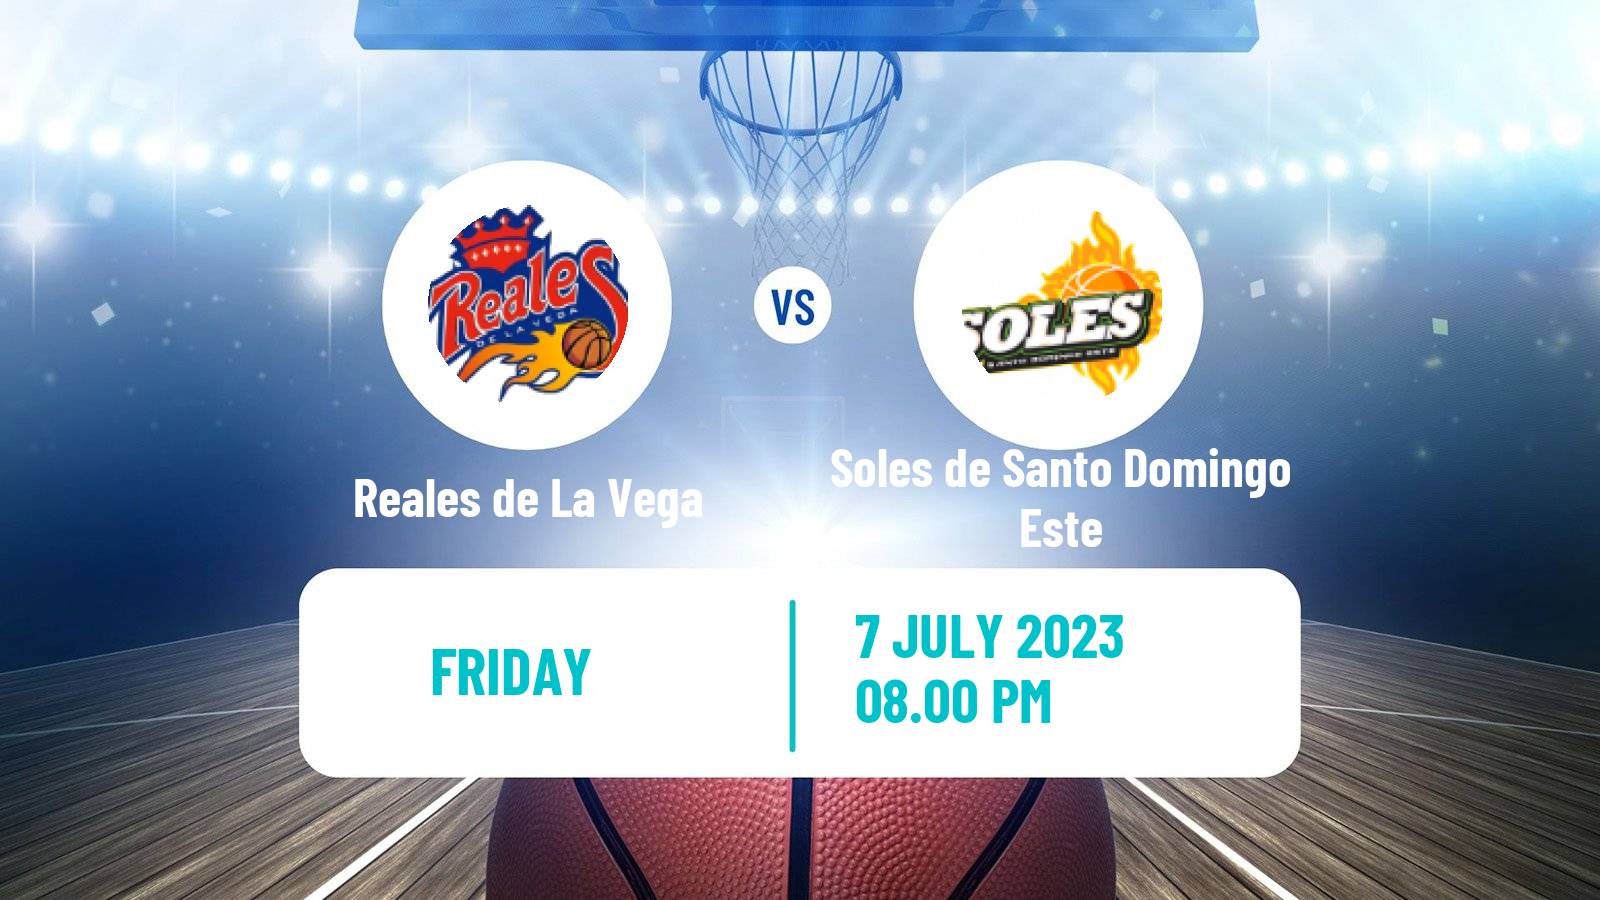 Basketball Dominican Republic LNB Basketball Reales de La Vega - Soles de Santo Domingo Este